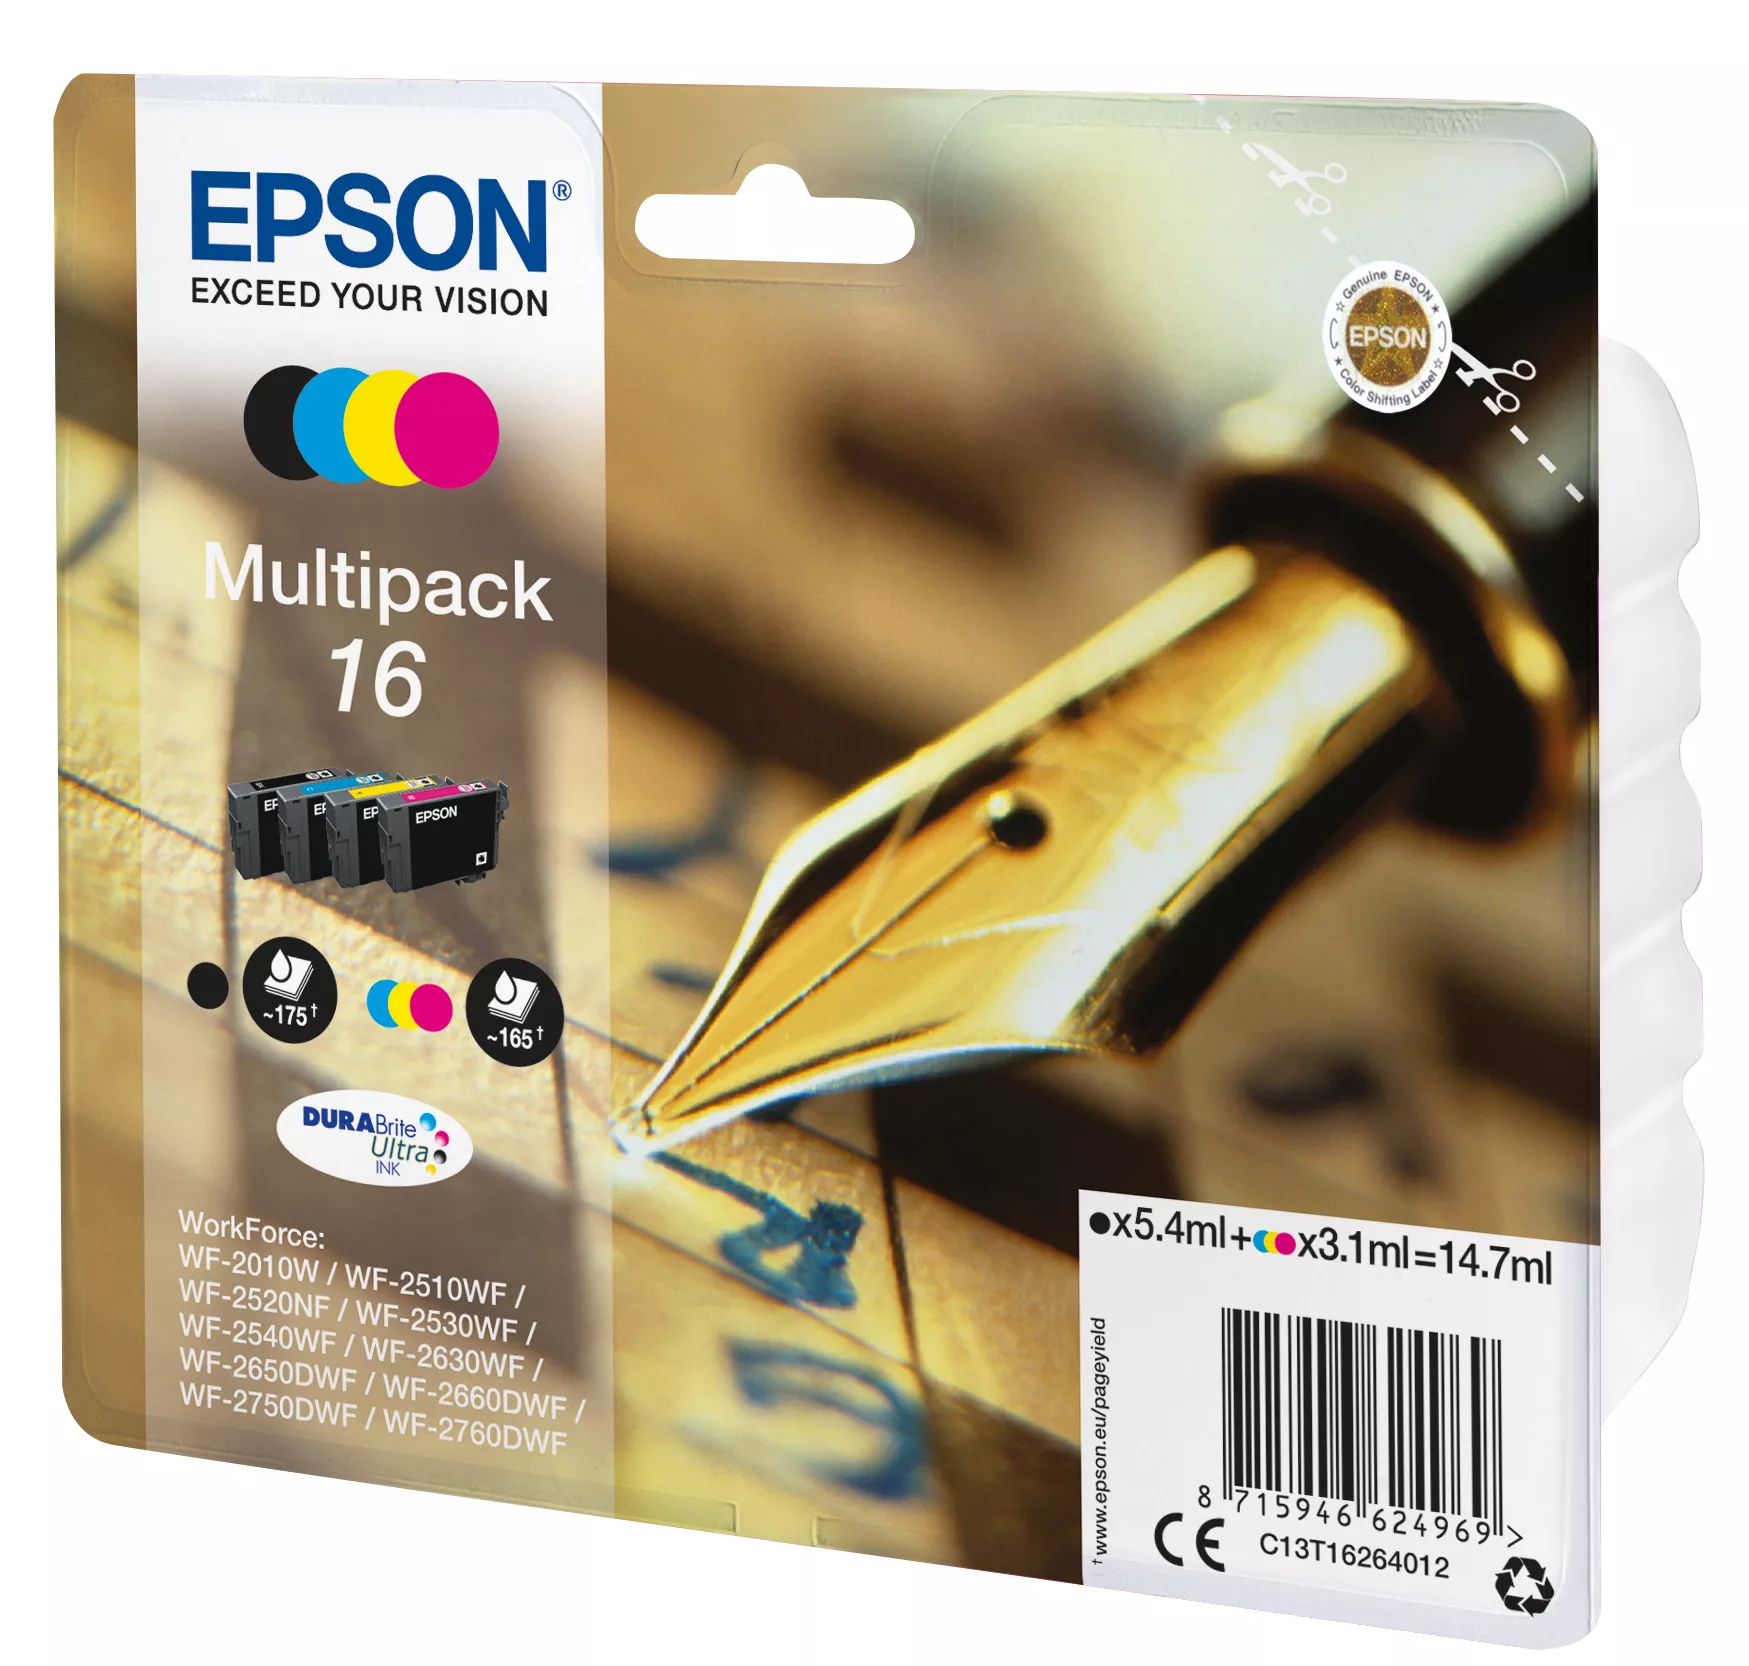 Vente EPSON 16 cartouche encre noir et tricolore capacité Epson au meilleur prix - visuel 2